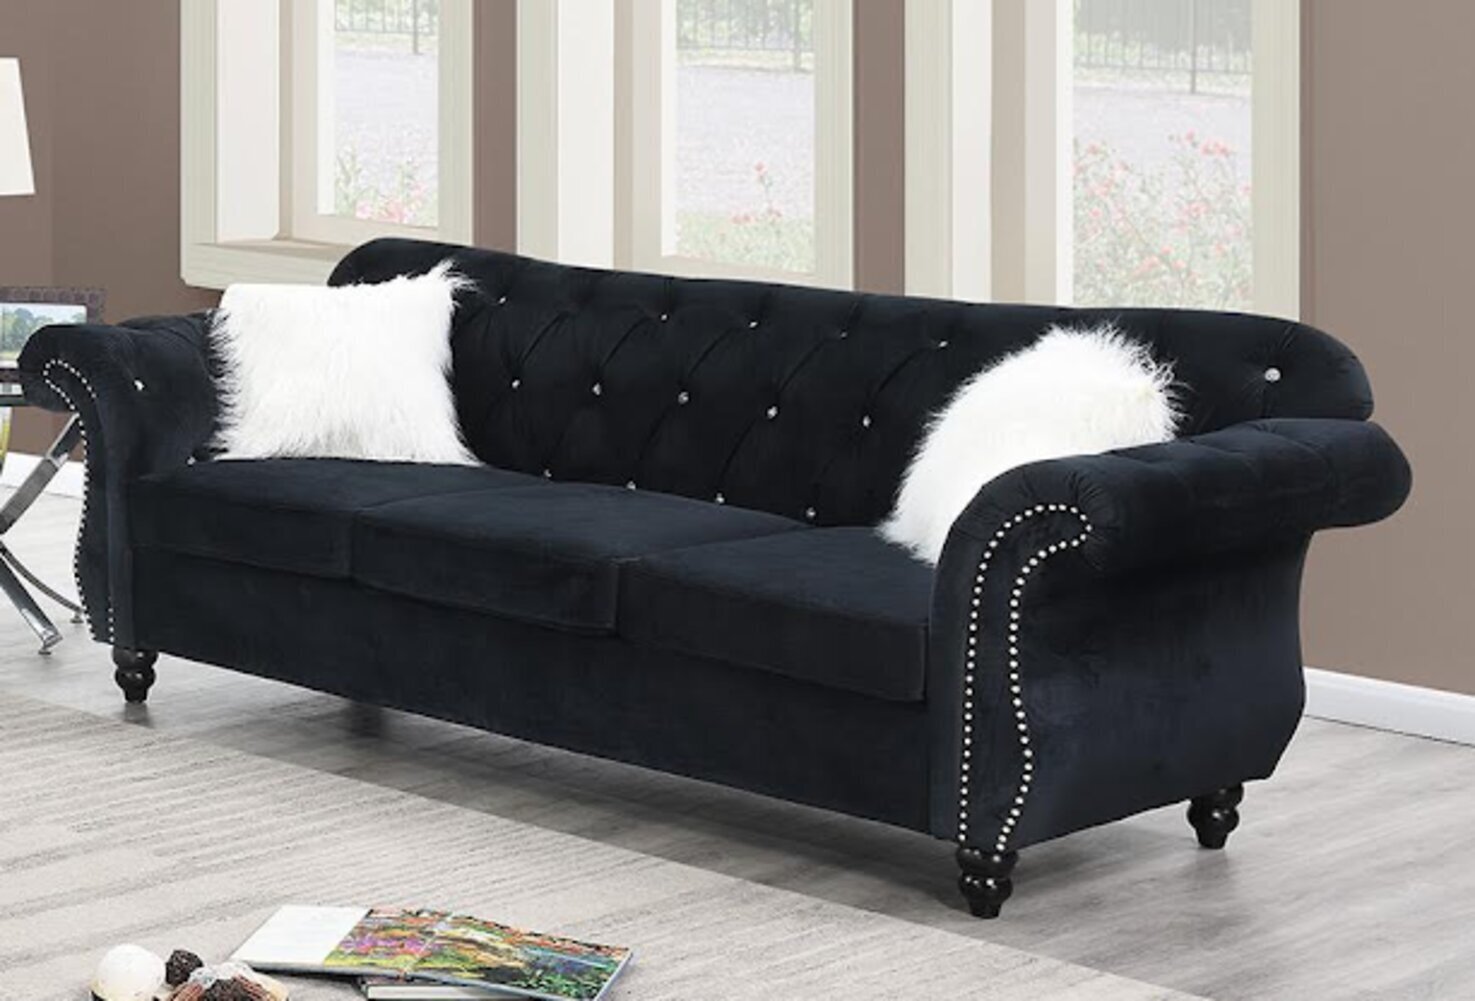 Glamorous Hollywood Inspired Sofa